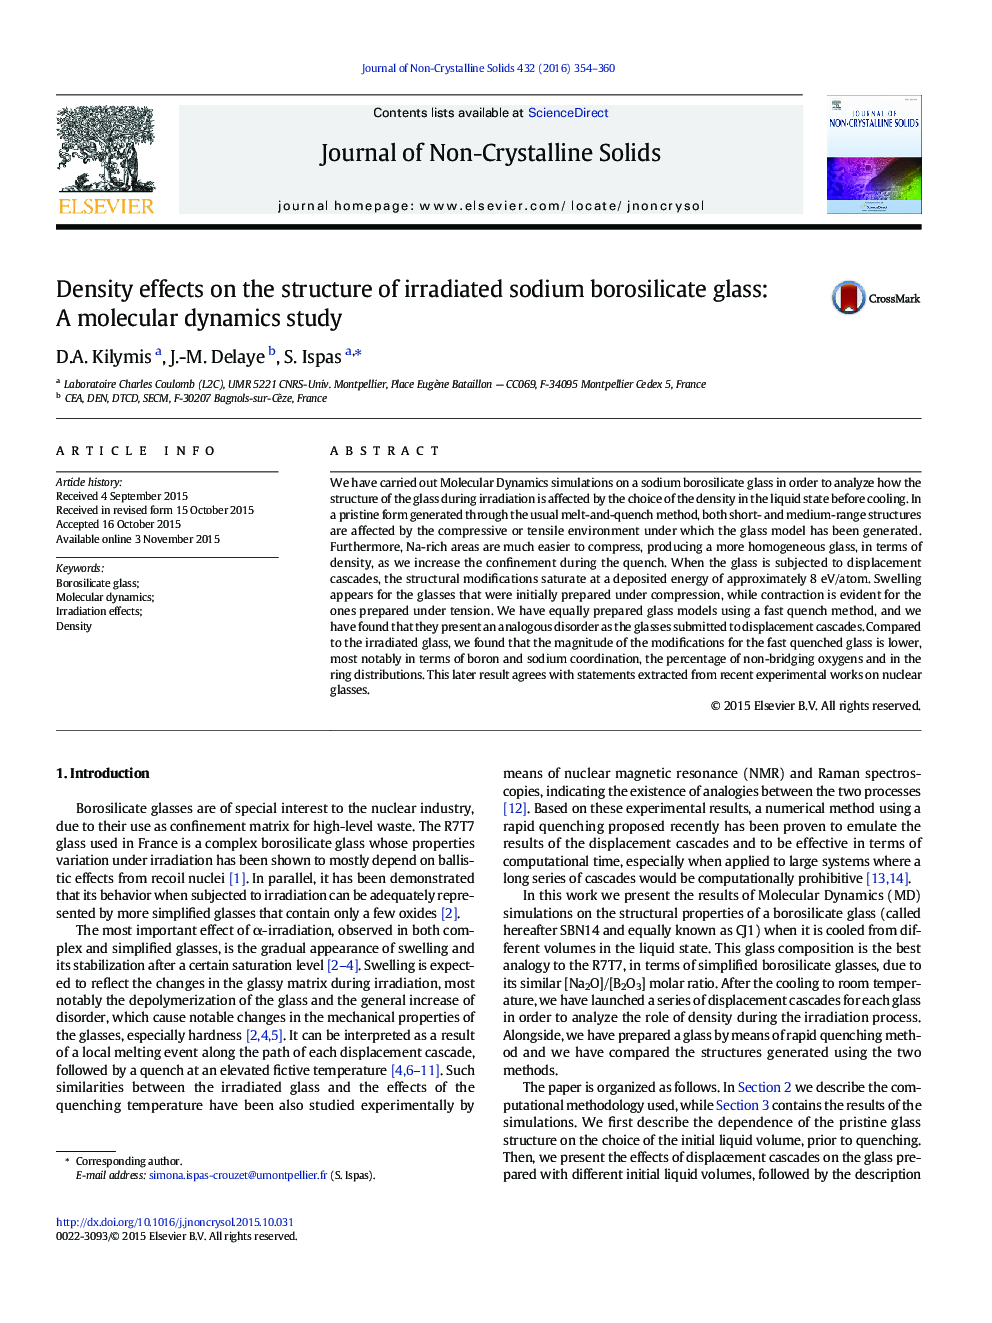 اثرات تراکمی بر ساختار شیشه ای بورسیلیکات سدیم مورد بررسی: مطالعه دینامیک مولکولی 